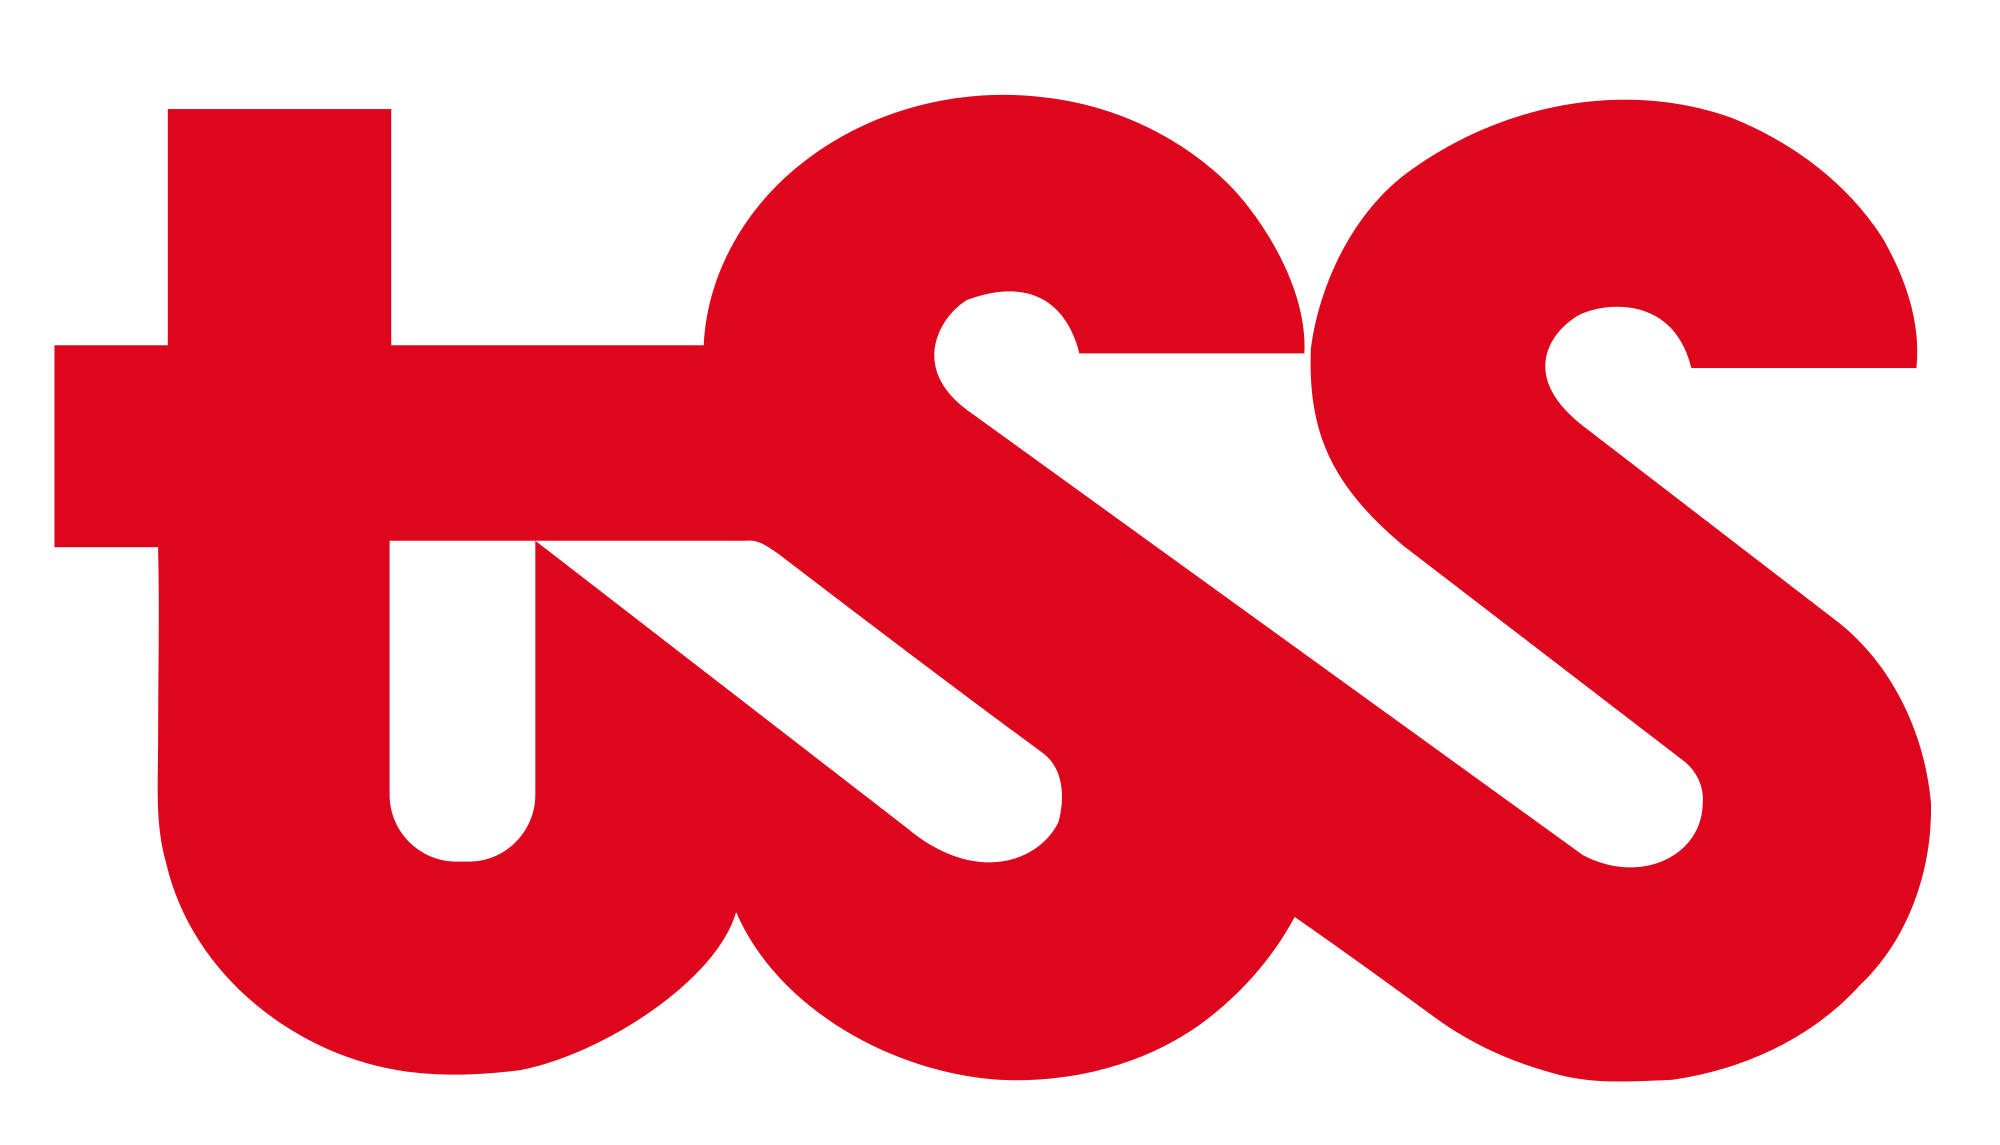 TSS Logo - File:Tss logo.svg - Wikimedia Commons